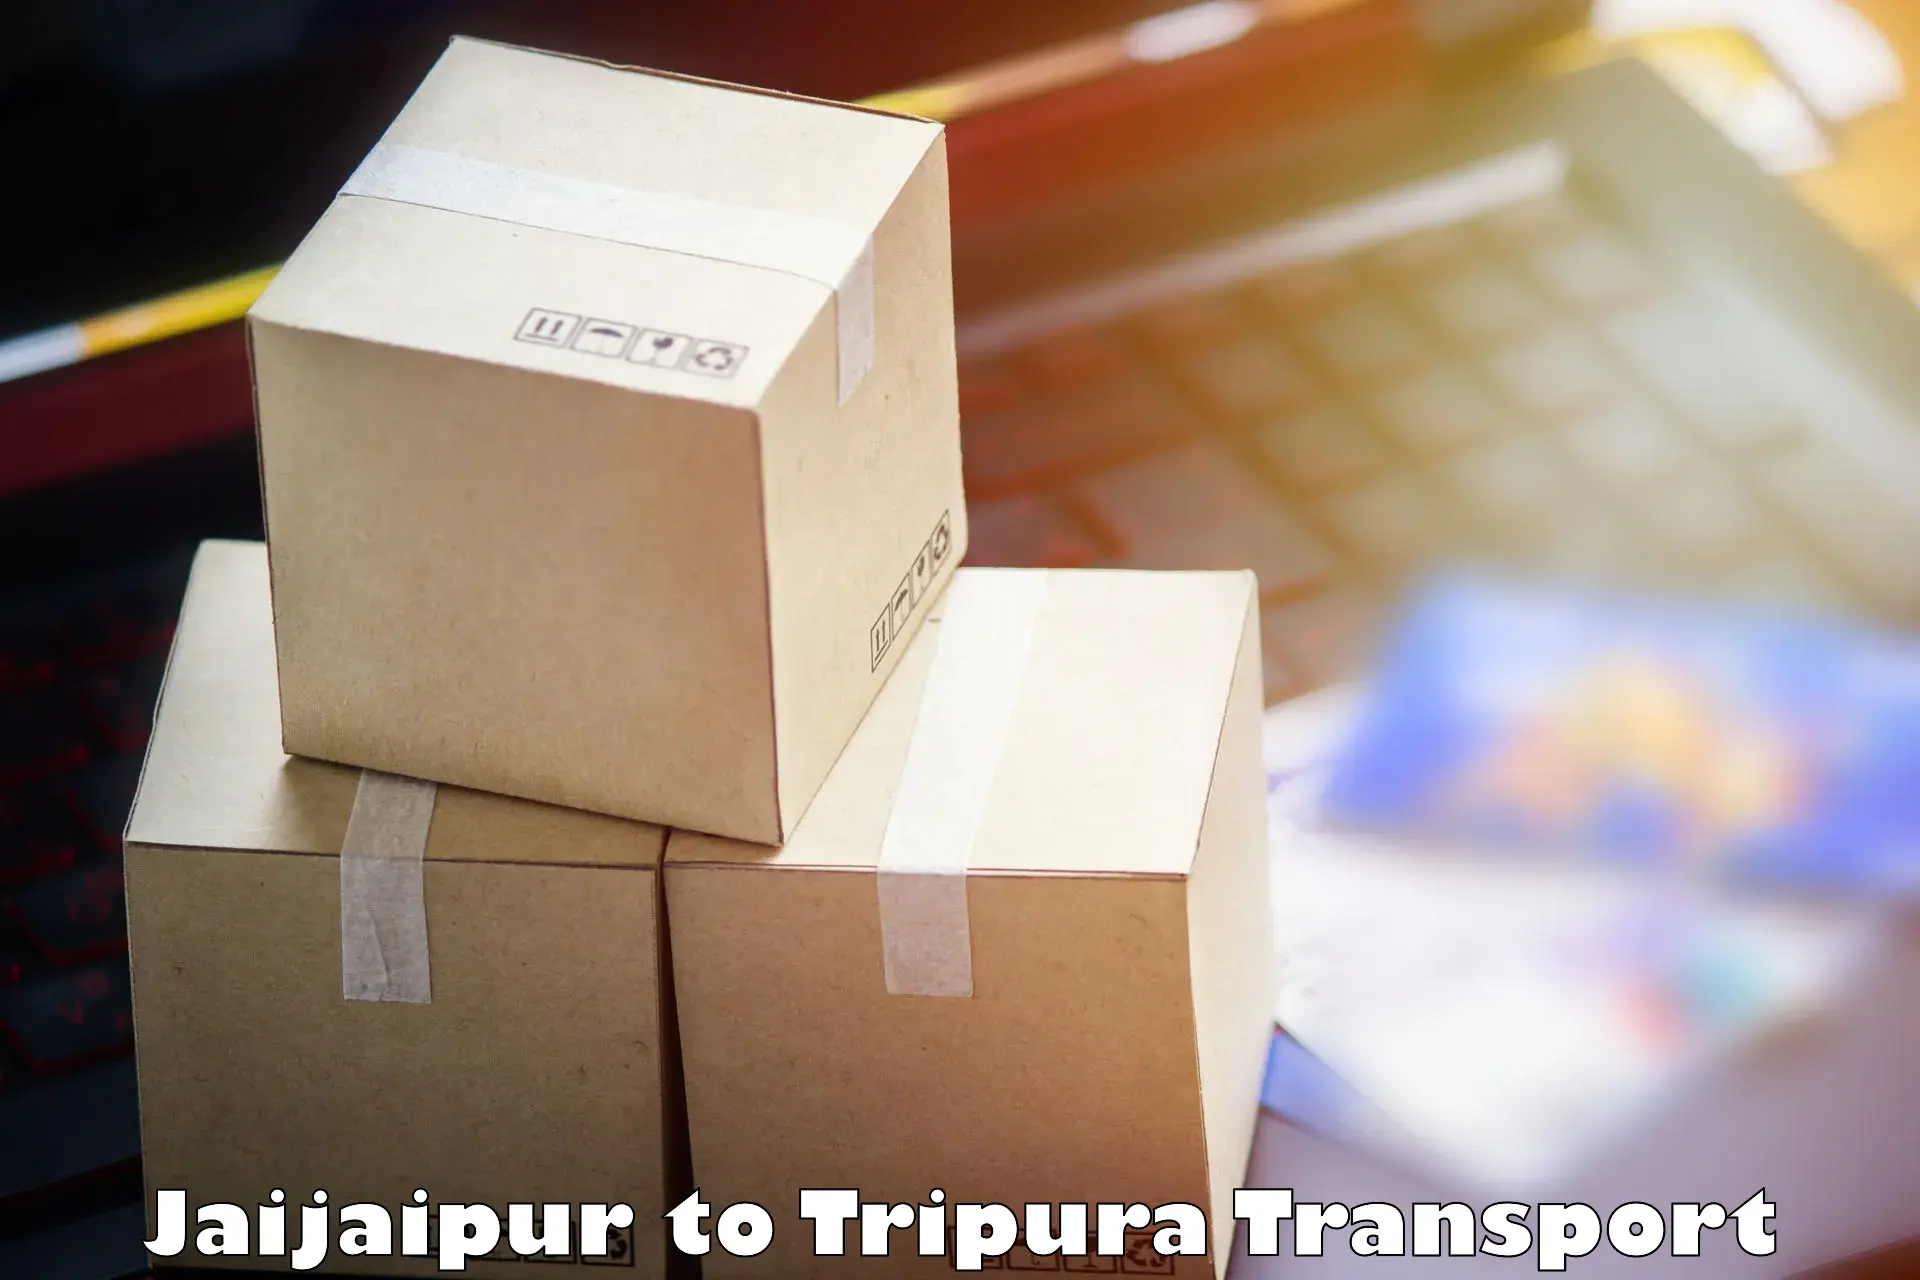 Daily transport service Jaijaipur to Amarpur Gomati